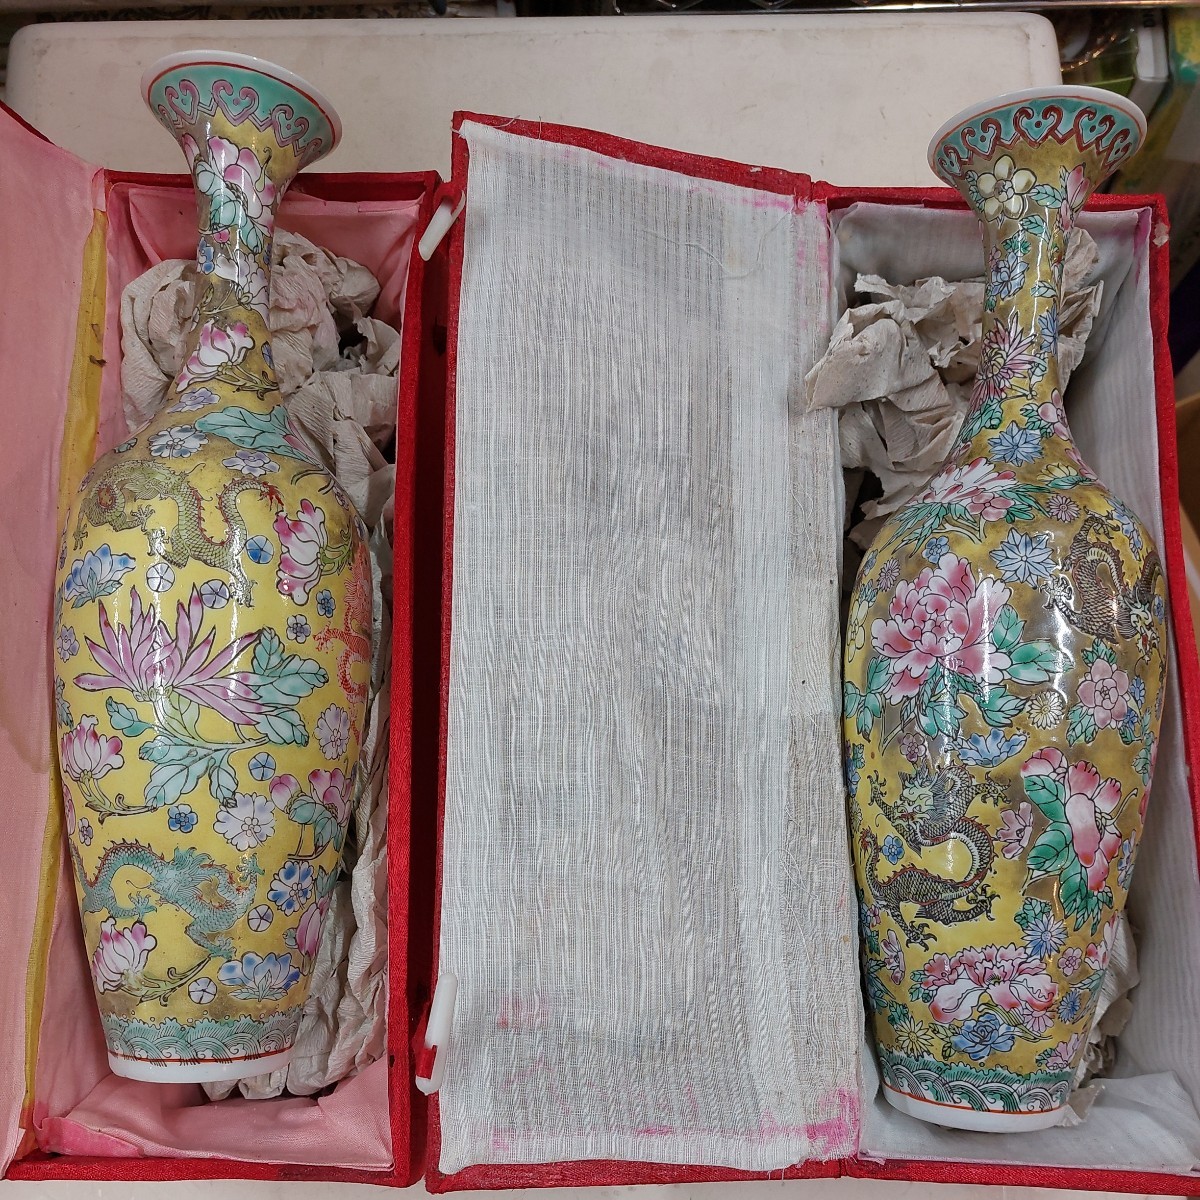 中国 景徳鎮 花瓶 古物 傷 汚れあり 壊れなし 箱にシミあり レアもの 薄造り レトロ 2個で